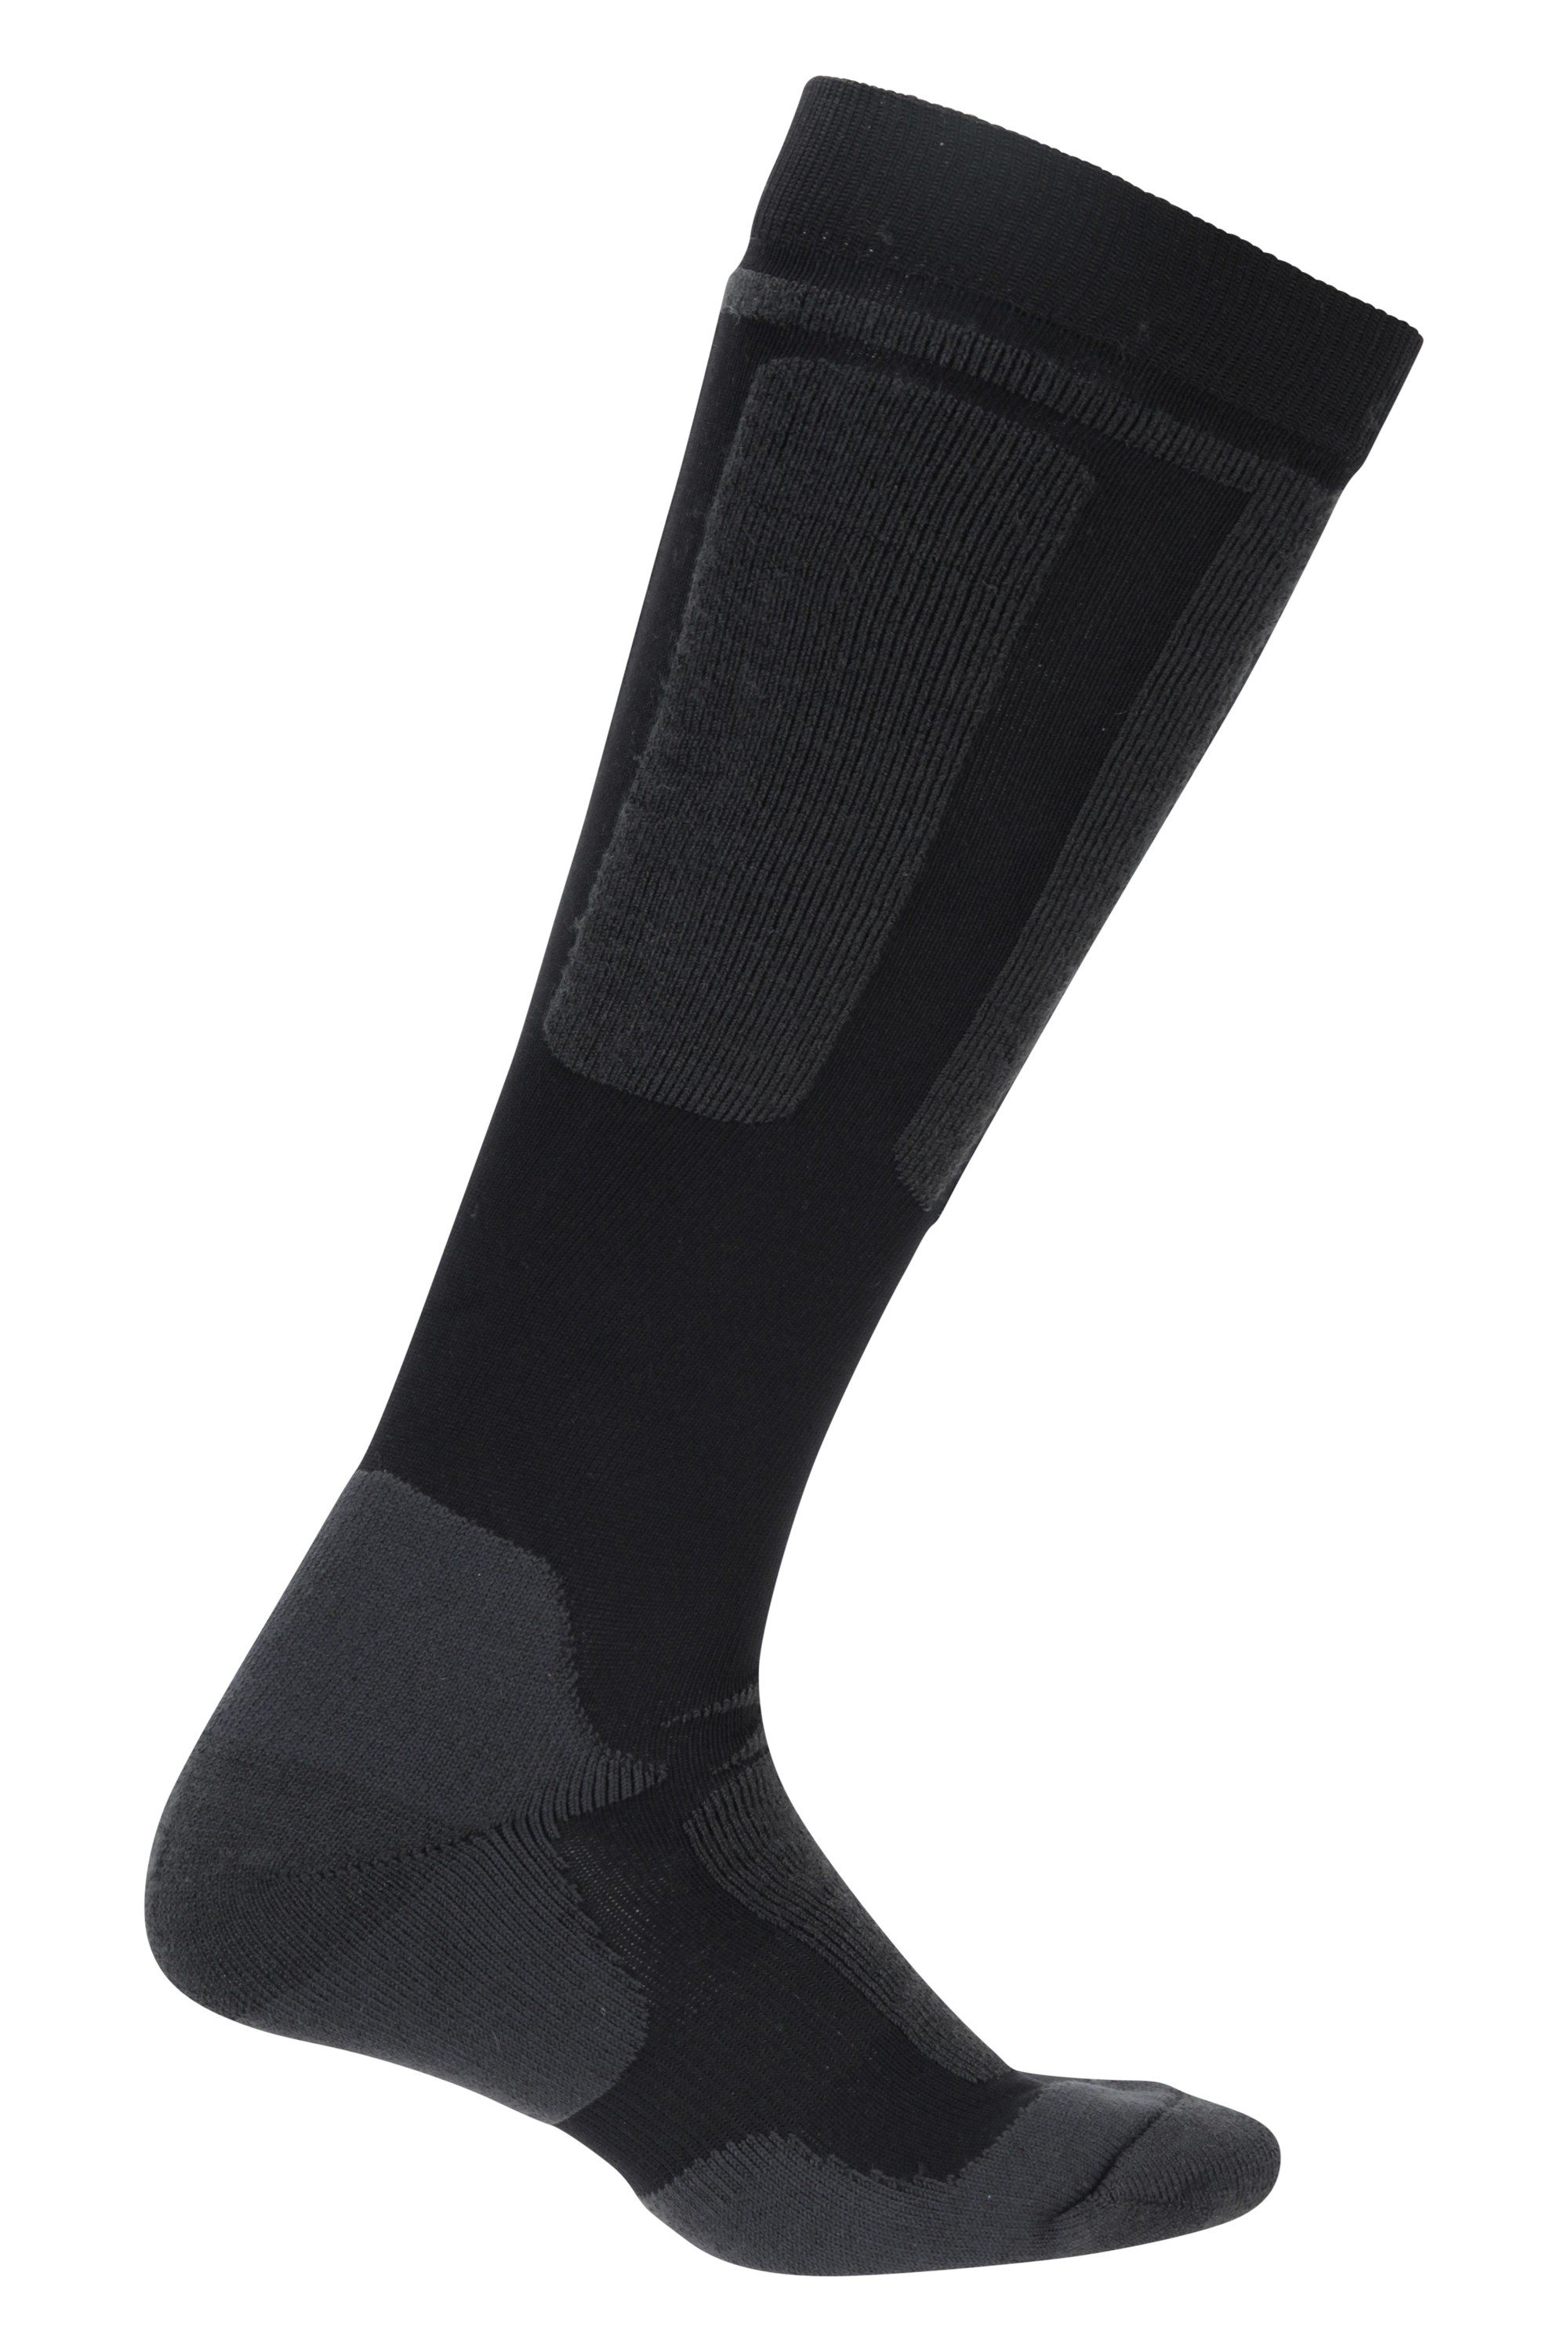 Extreme Mens Merino Thermal Ski Socks - Black